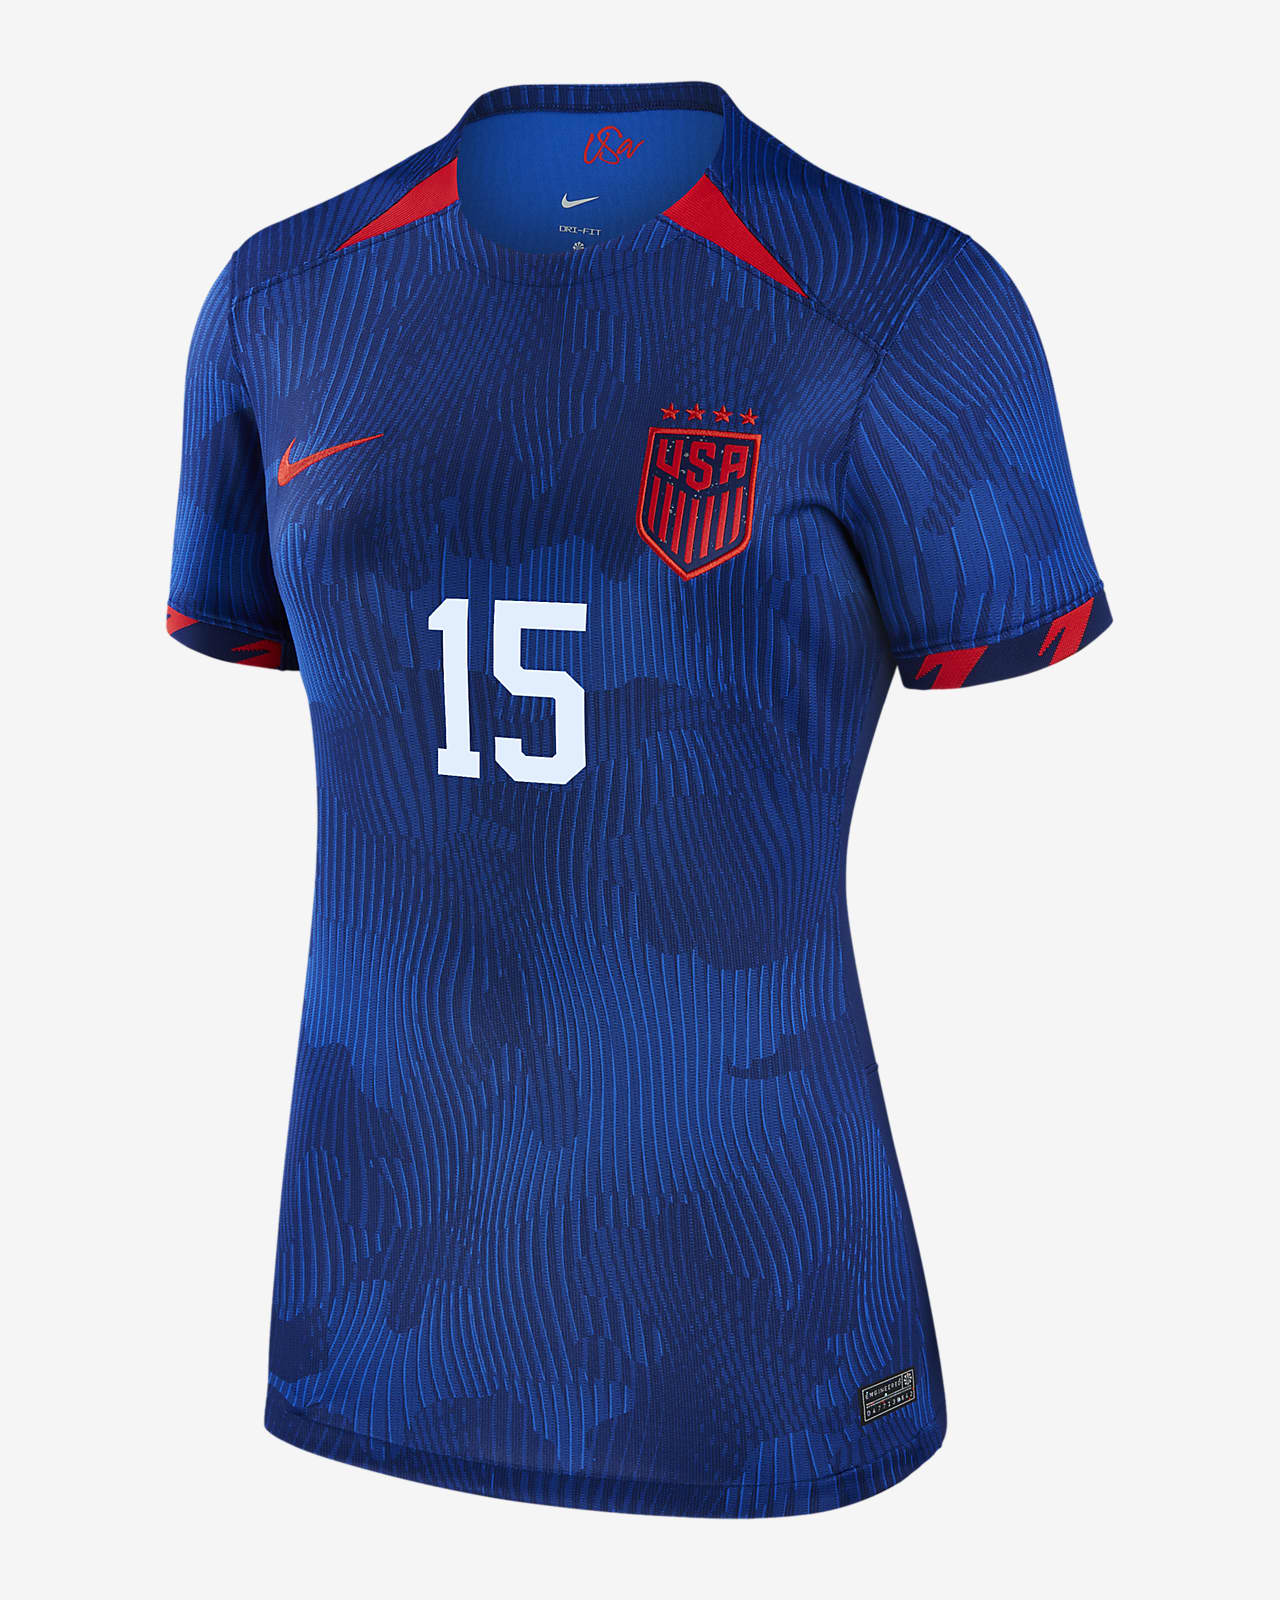 de fútbol Nike Dri-FIT Megan Rapinoe de la selección nacional de fútbol femenino de Estados Unidos visitante para mujer. Nike .com